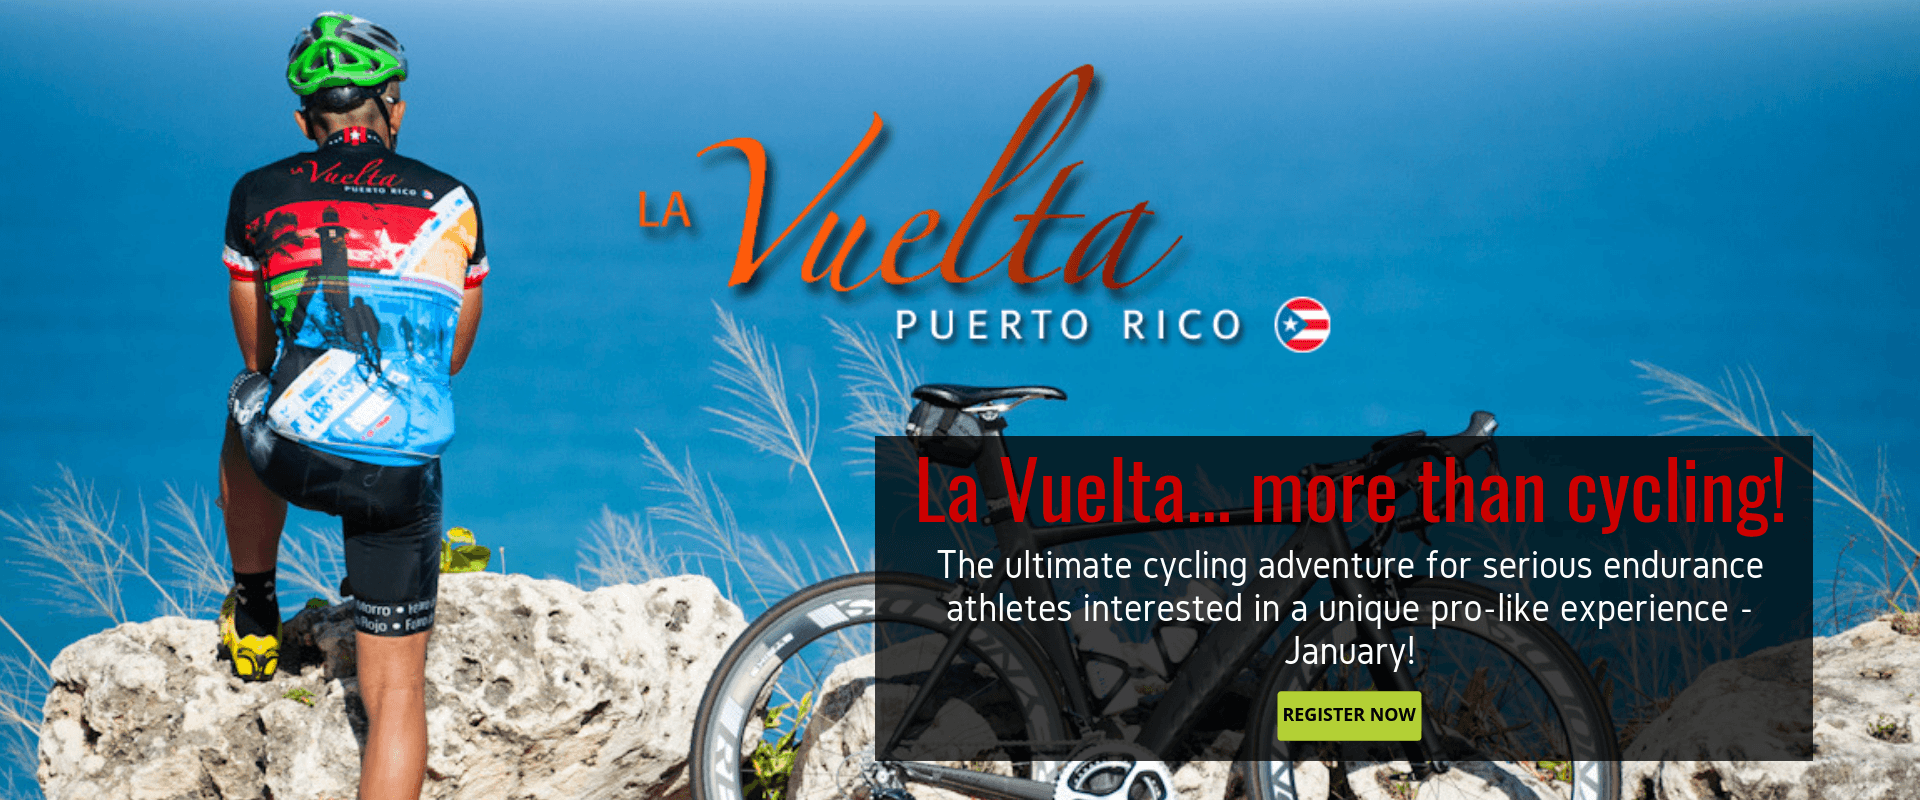 Vuelta Puerto Rico …more than cycling!